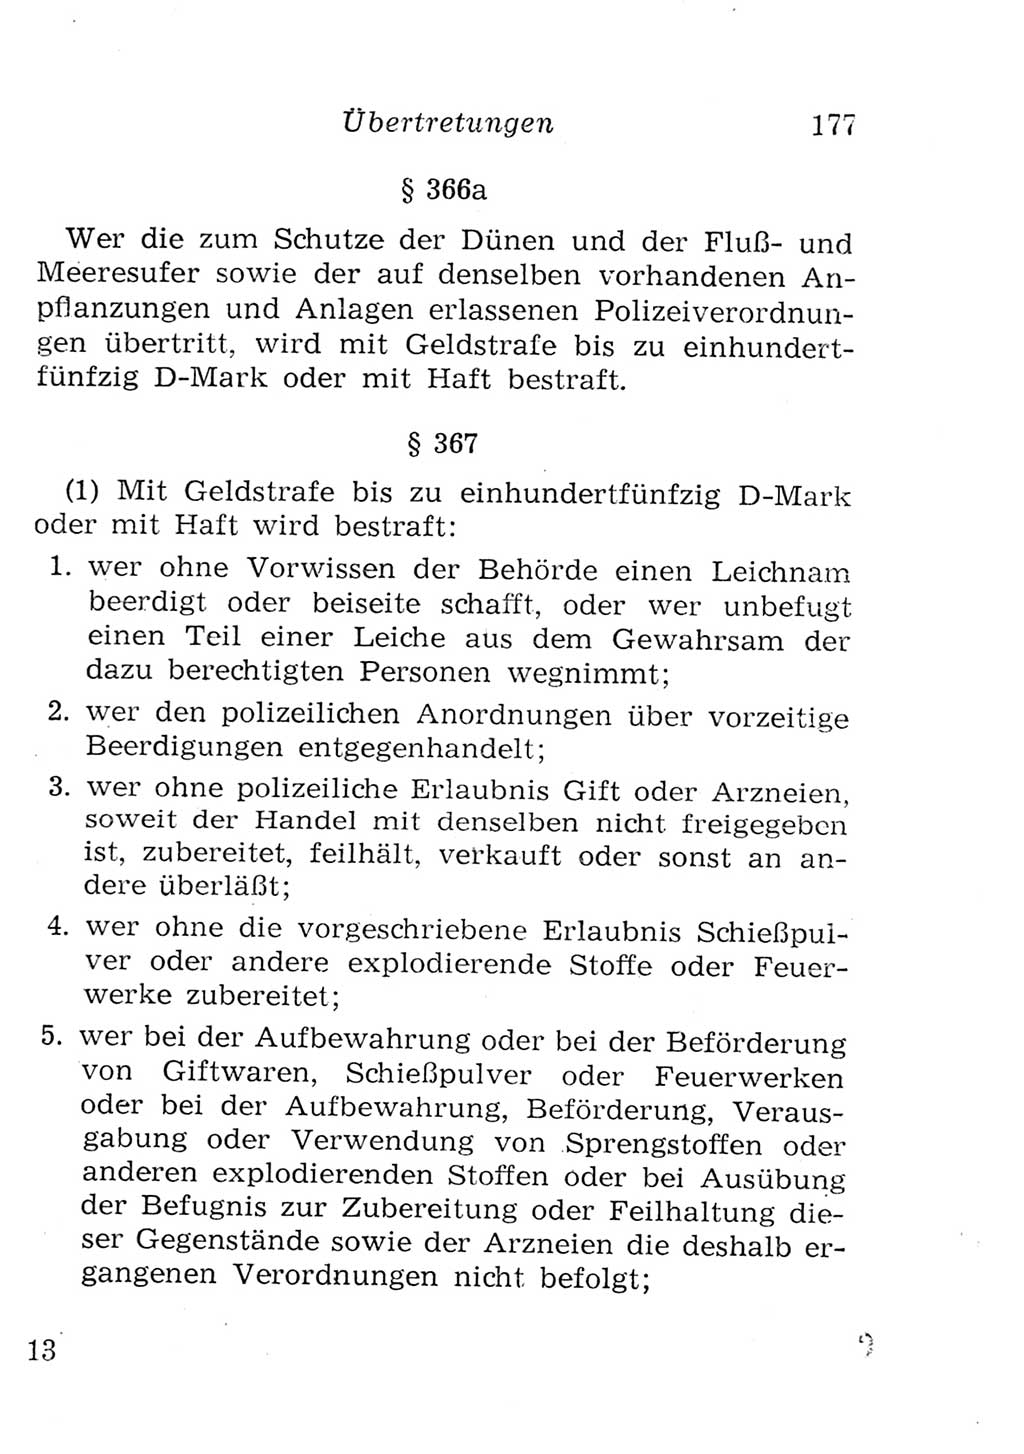 Strafgesetzbuch (StGB) und andere Strafgesetze [Deutsche Demokratische Republik (DDR)] 1957, Seite 177 (StGB Strafges. DDR 1957, S. 177)